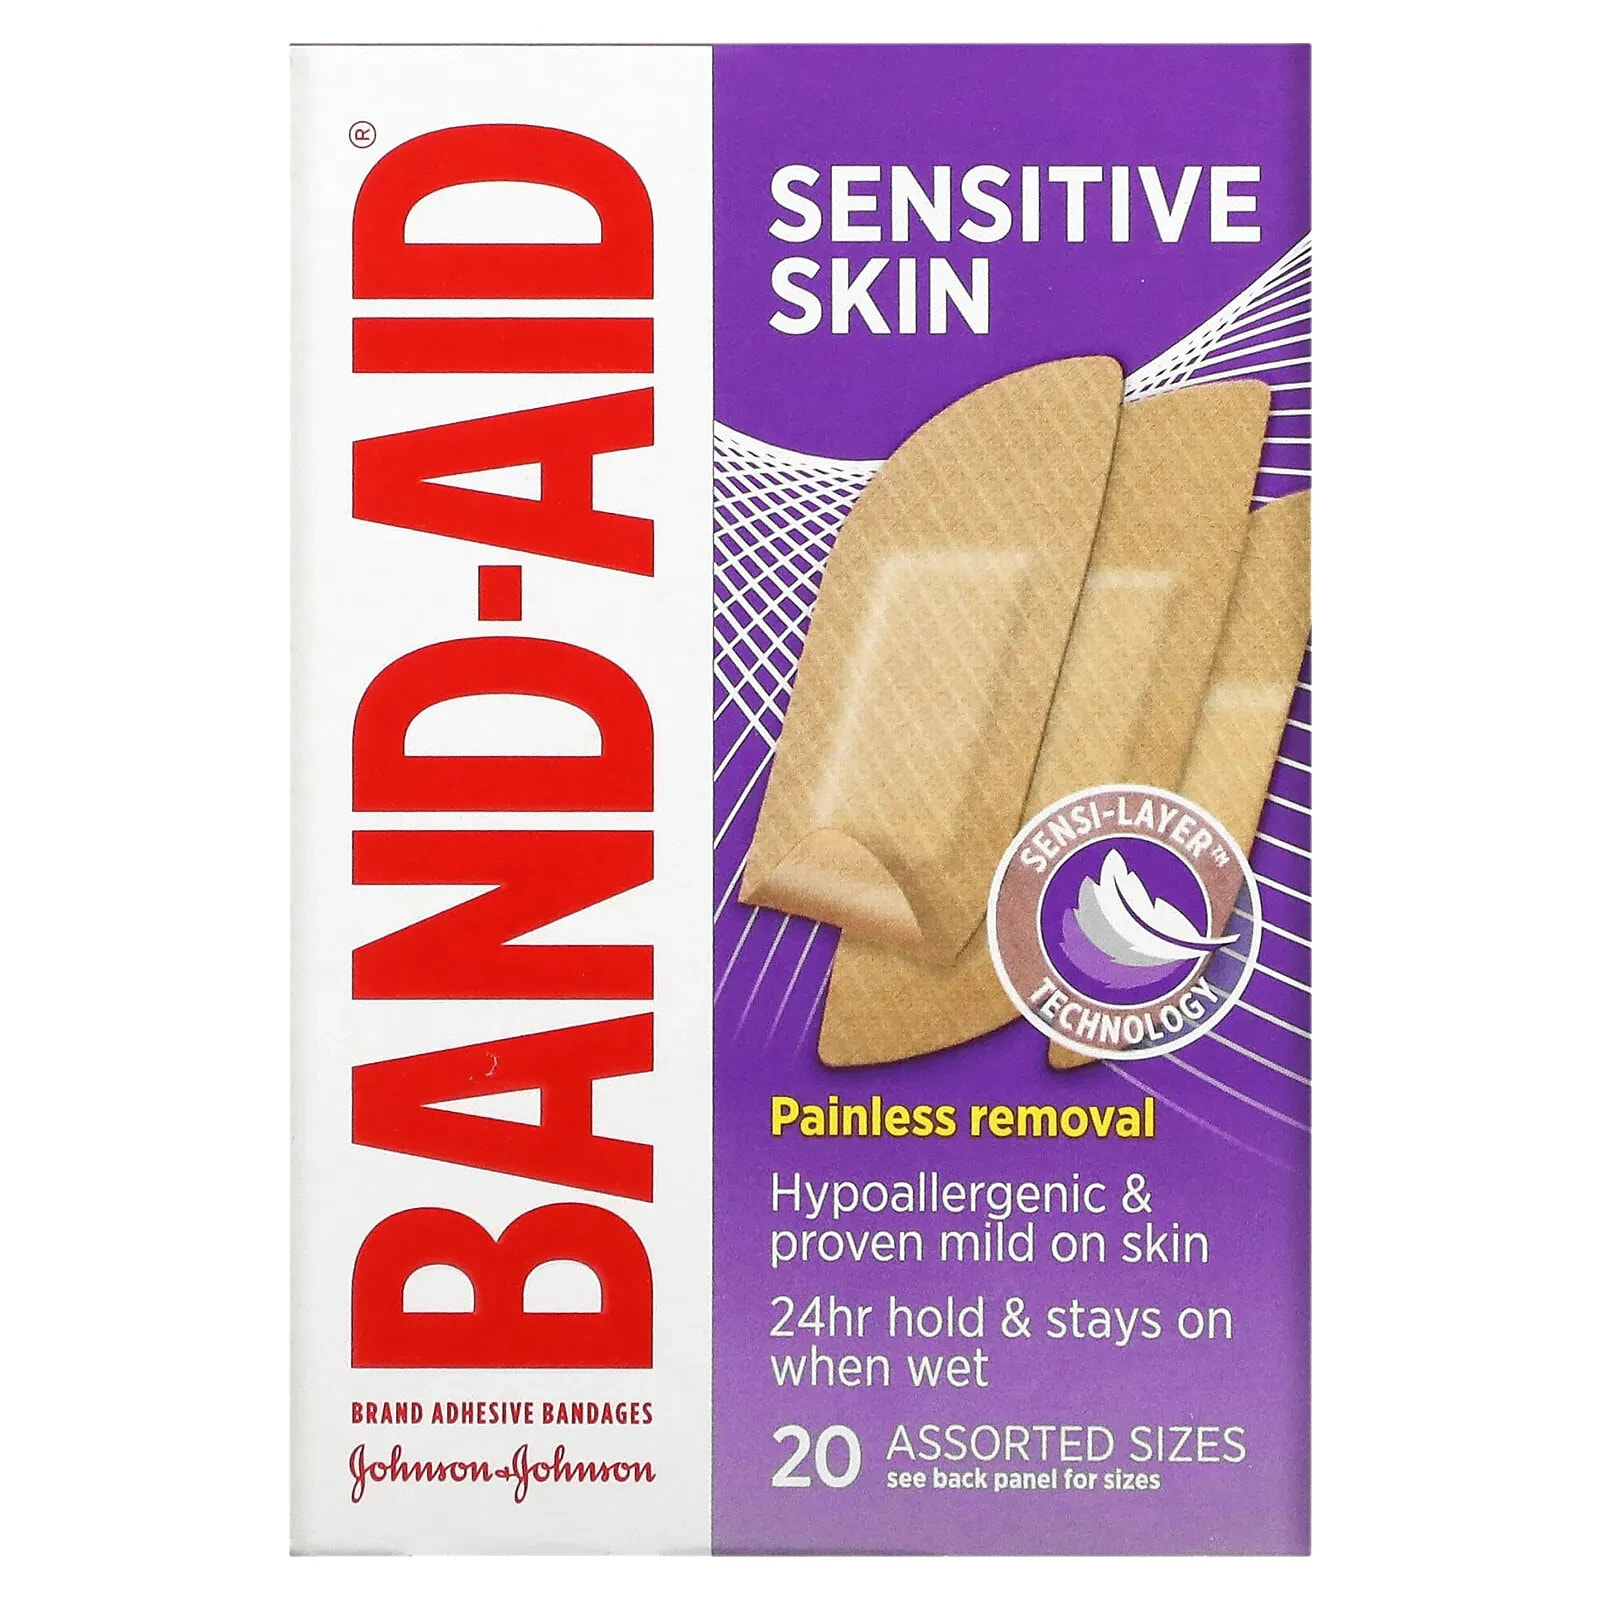 Band Aid, лейкопластыри, для чувствительной кожи, очень большие, 7 шт.